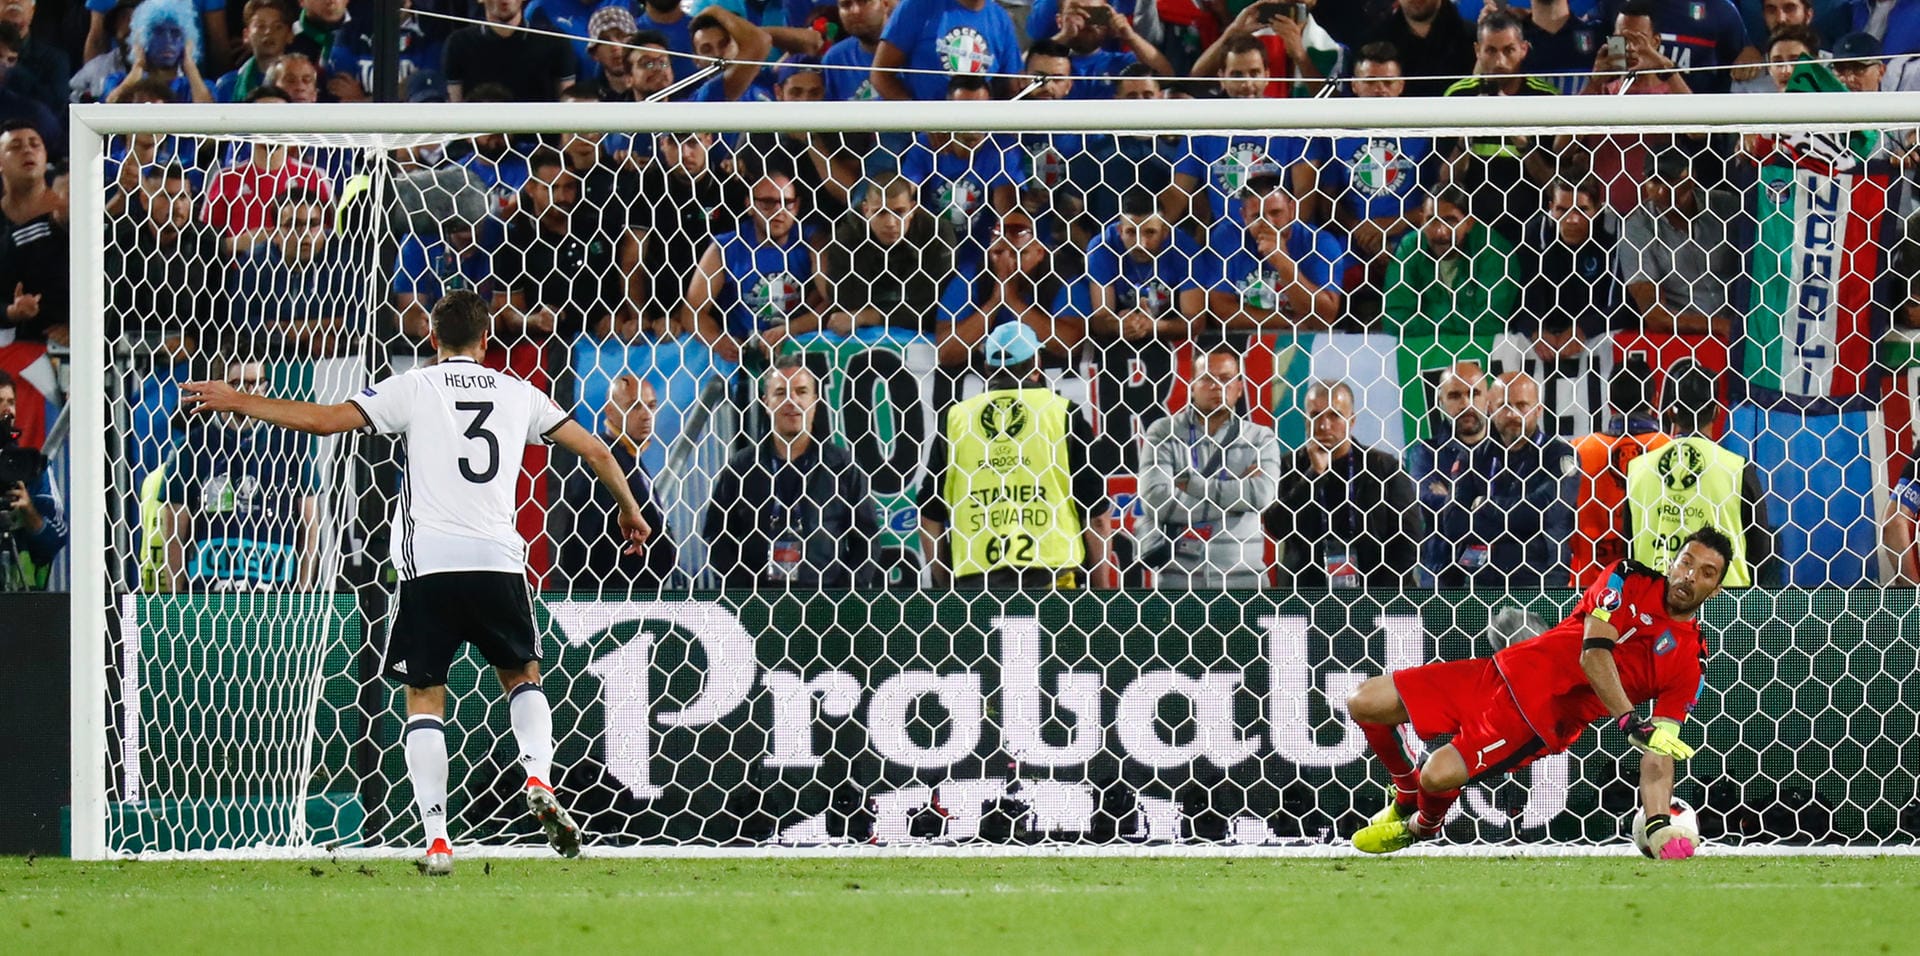 Und dort setzt sich DEUTSCHLAND mit 6:5 durch! Hector erzielt das entscheidende Tor gegen Buffon, zuvor hatten etliche Schützen verschossen. Die DFB-Elf steht im Halbfinale, Italien ist draußen.